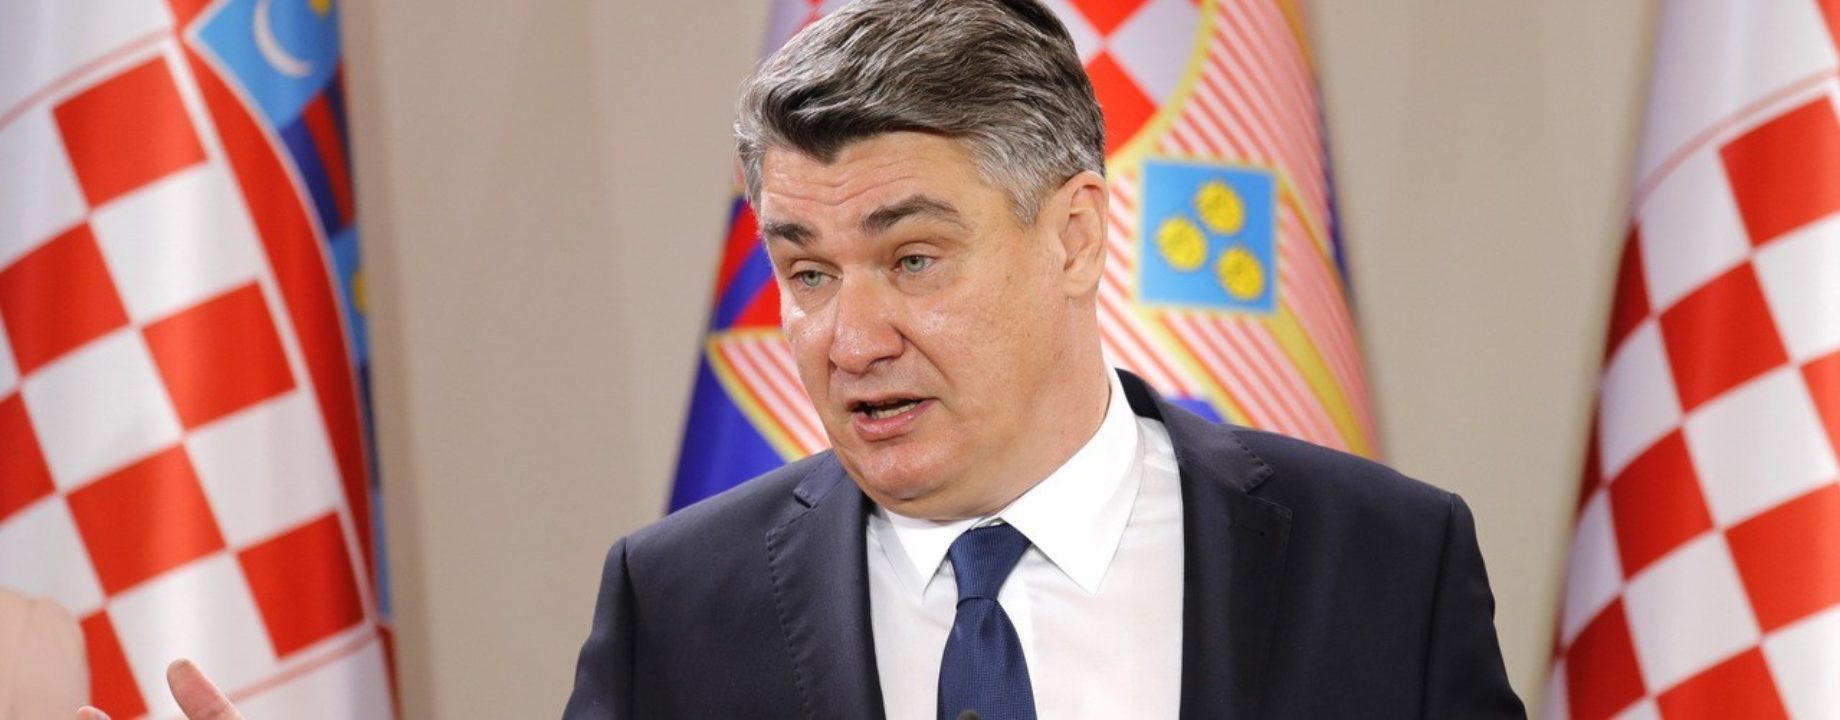 Prime Minister Zoran Milanovic 2